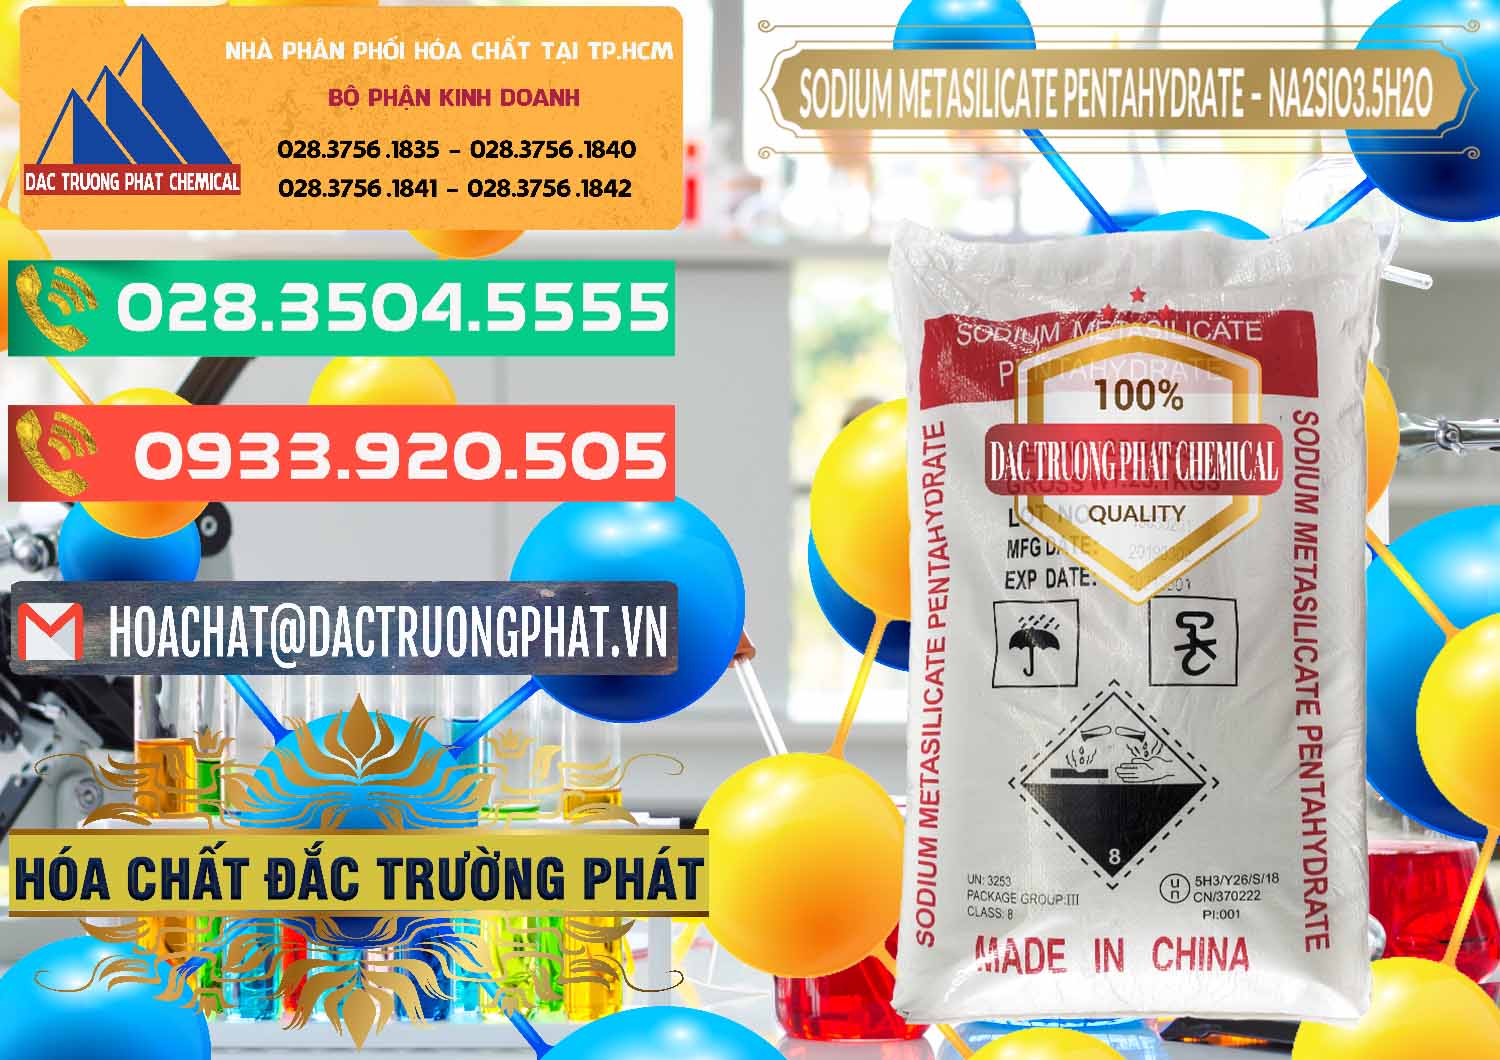 Cty bán - cung ứng Sodium Metasilicate Pentahydrate – Silicate Bột Trung Quốc China - 0147 - Nơi bán và cung cấp hóa chất tại TP.HCM - congtyhoachat.com.vn